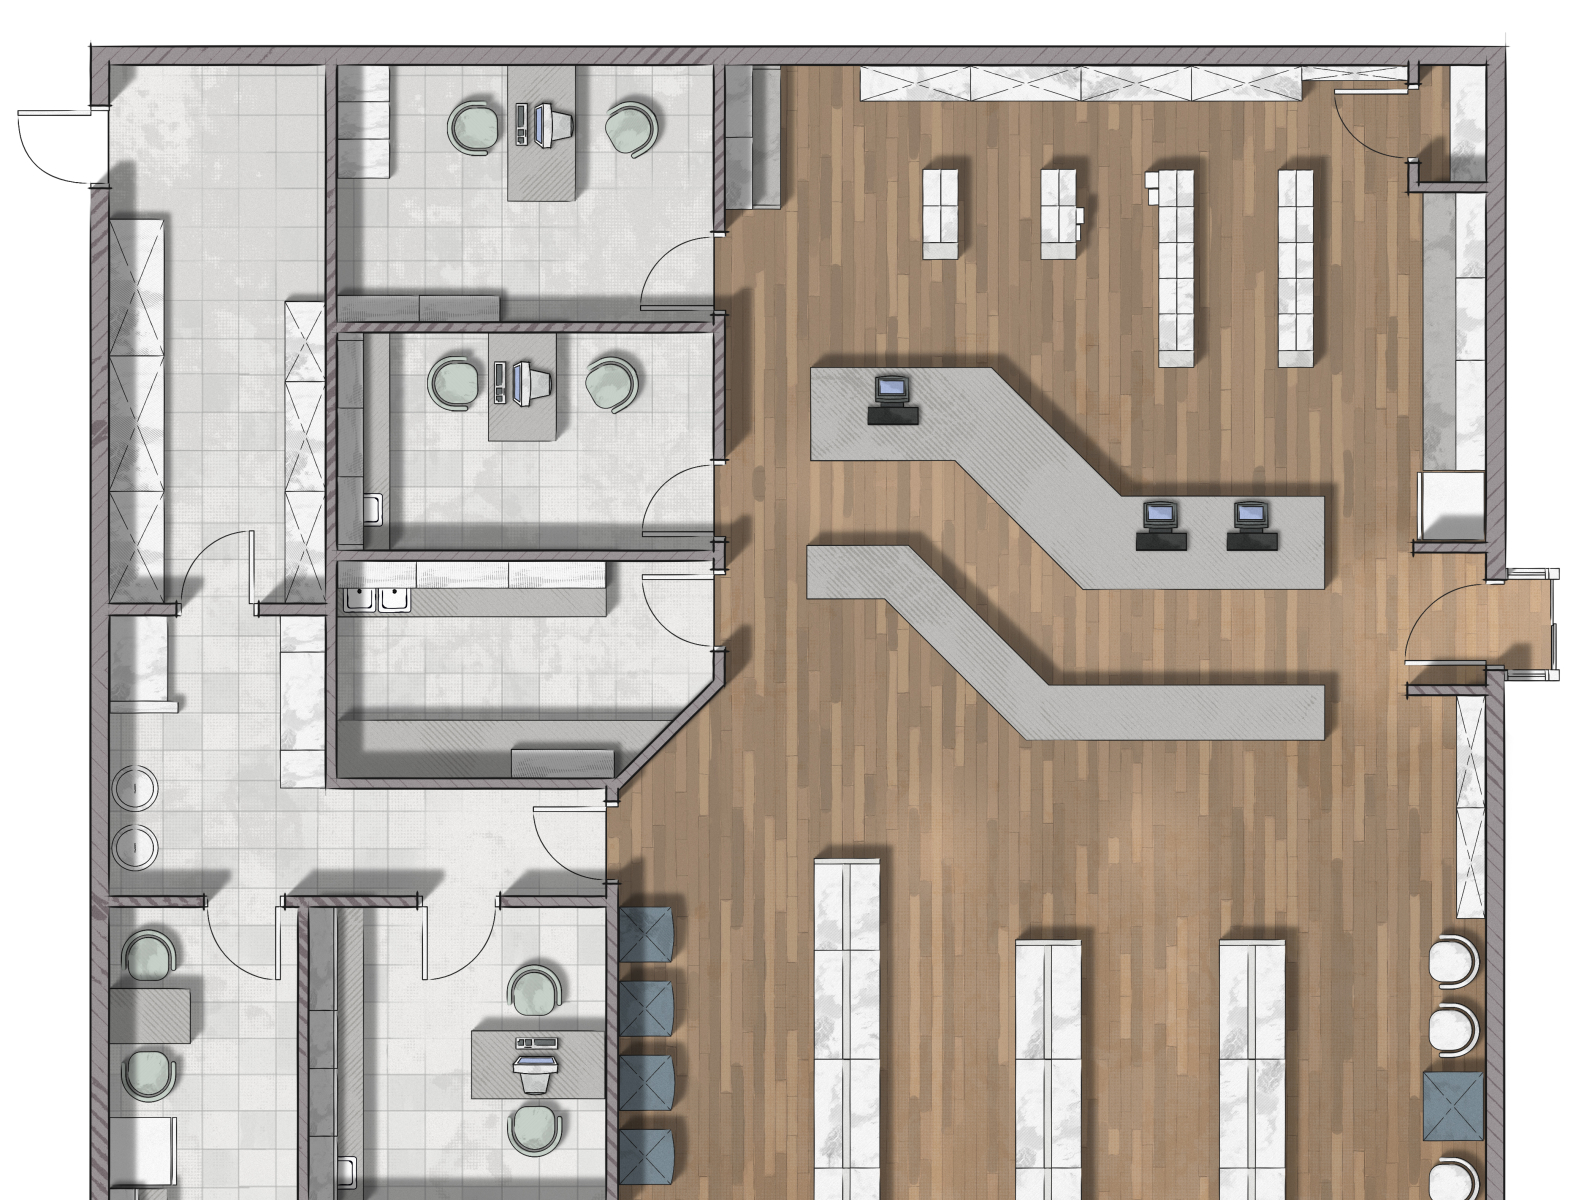 Pharmacy floor plan rendering by Alberto Talens Fernandez